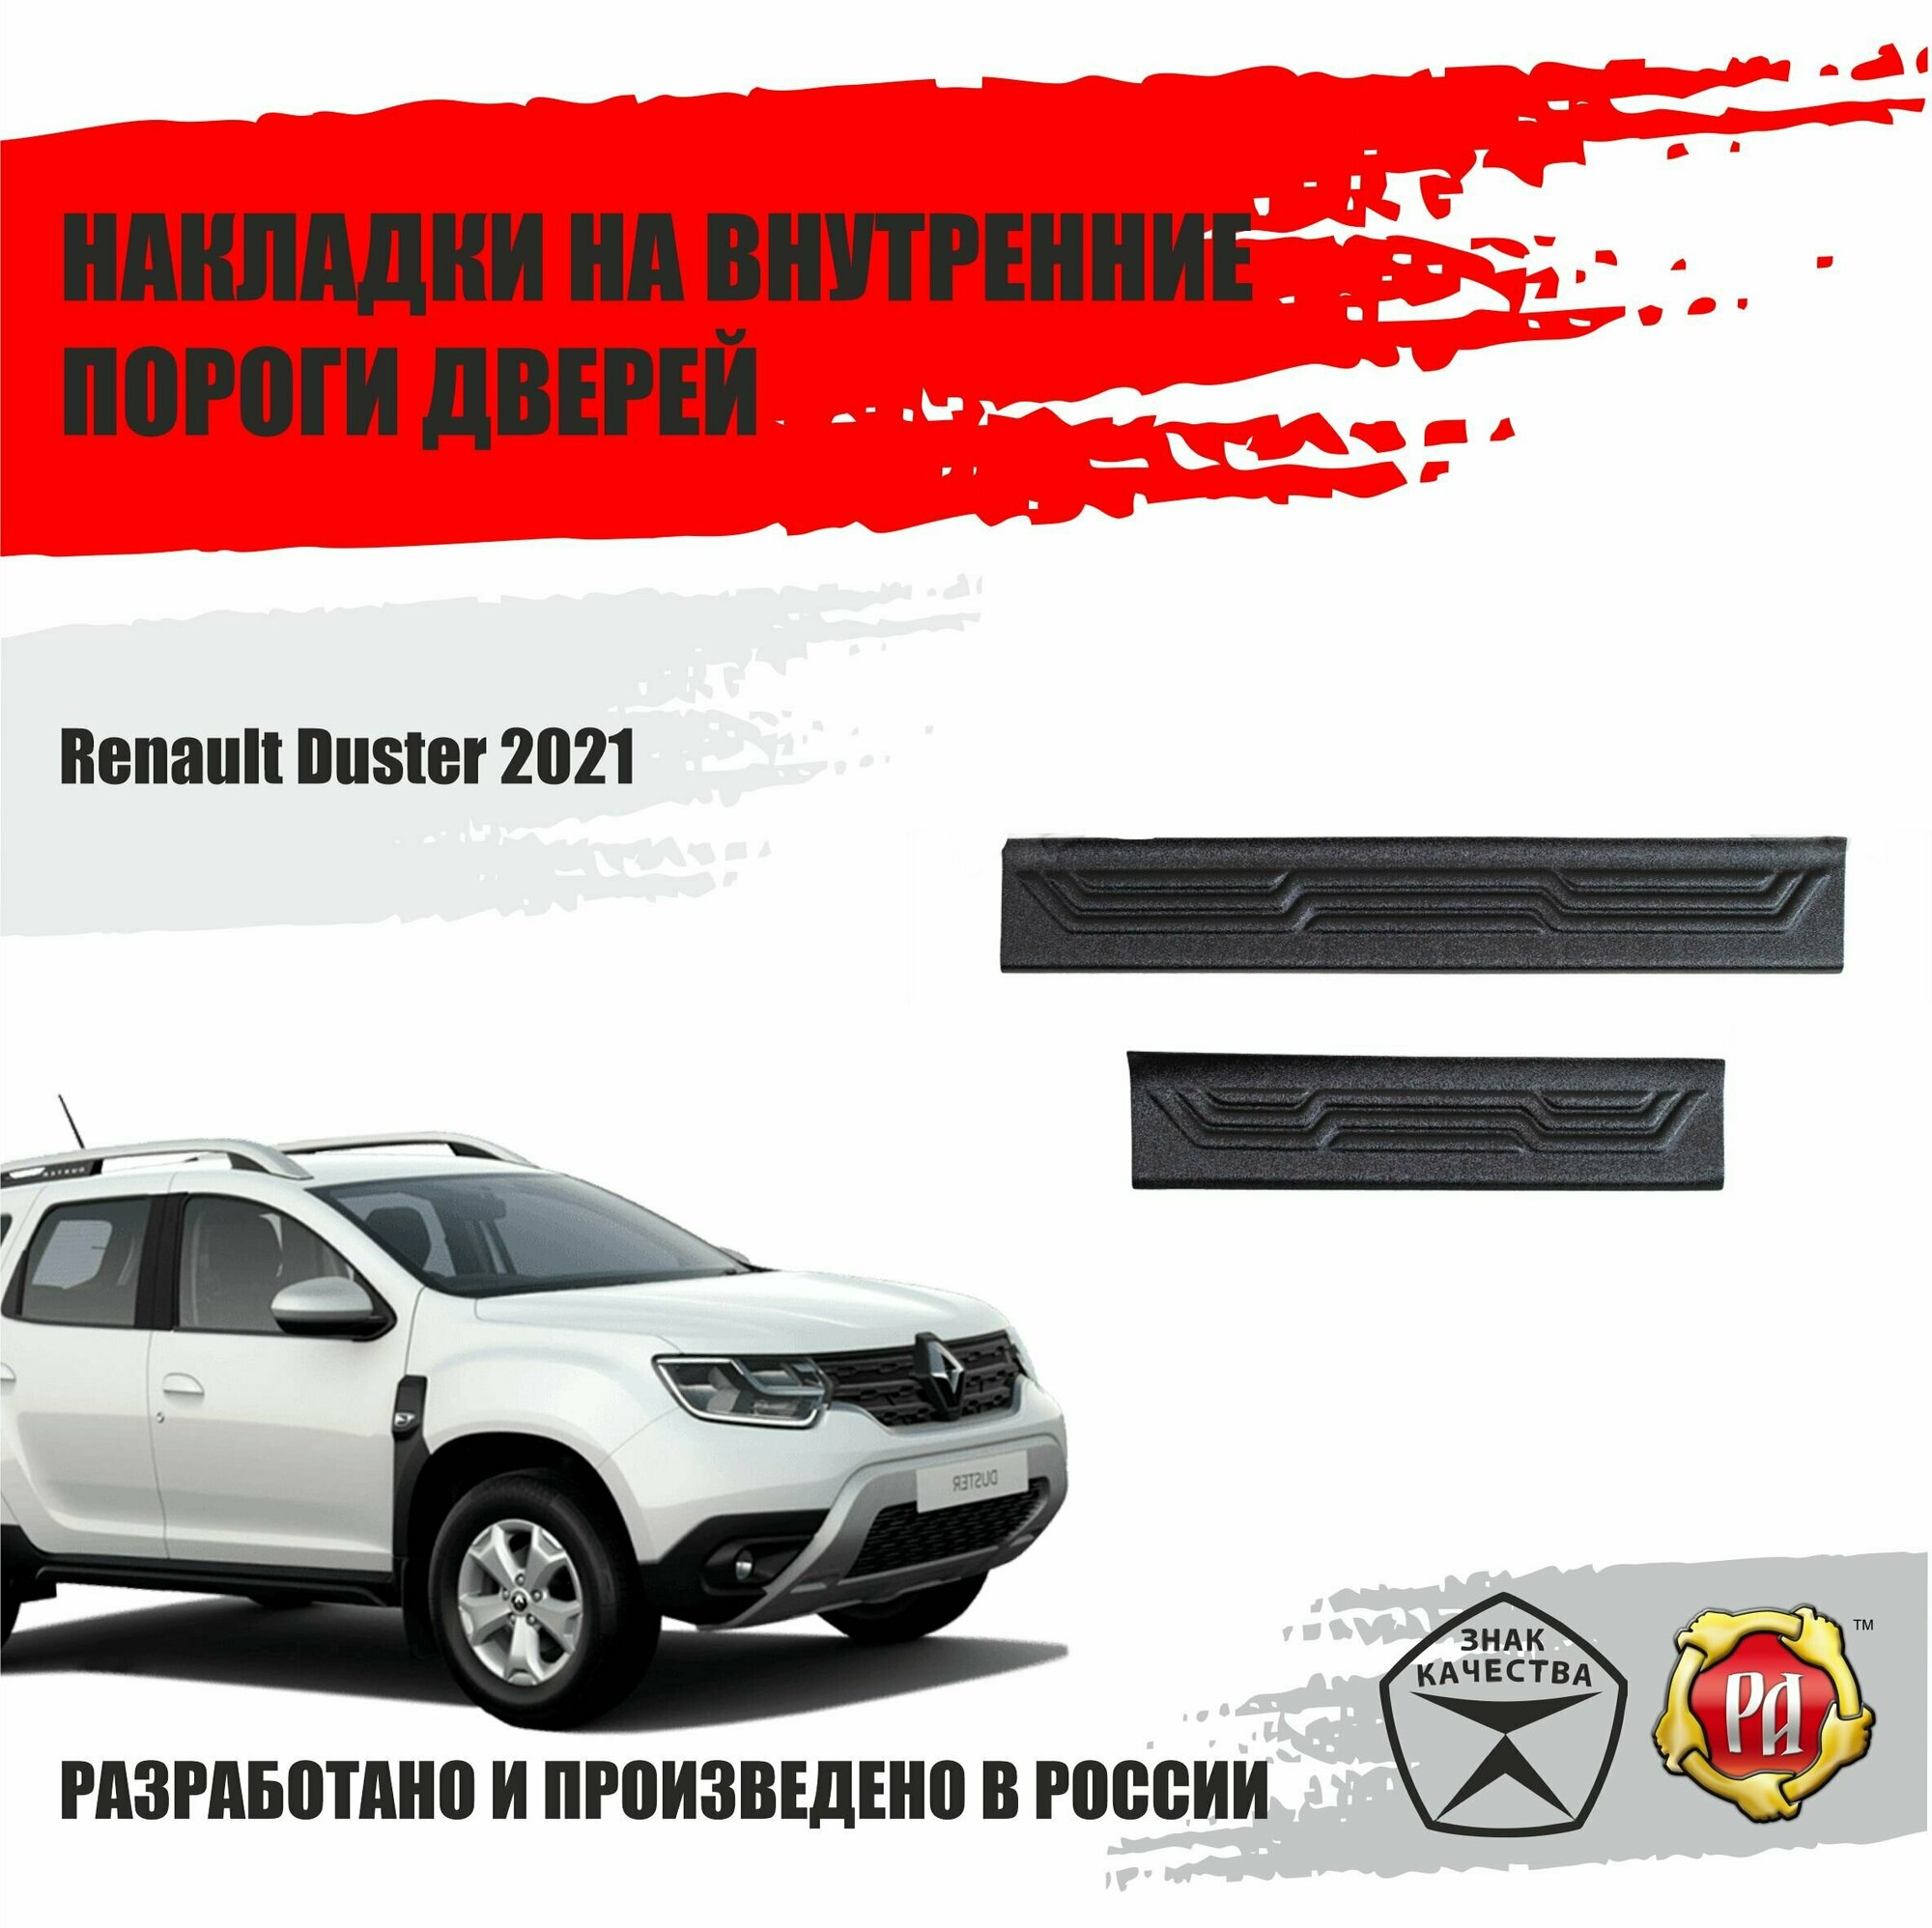 Накладки на пороги дверей Русская Артель для Renault Duster 2021-2022